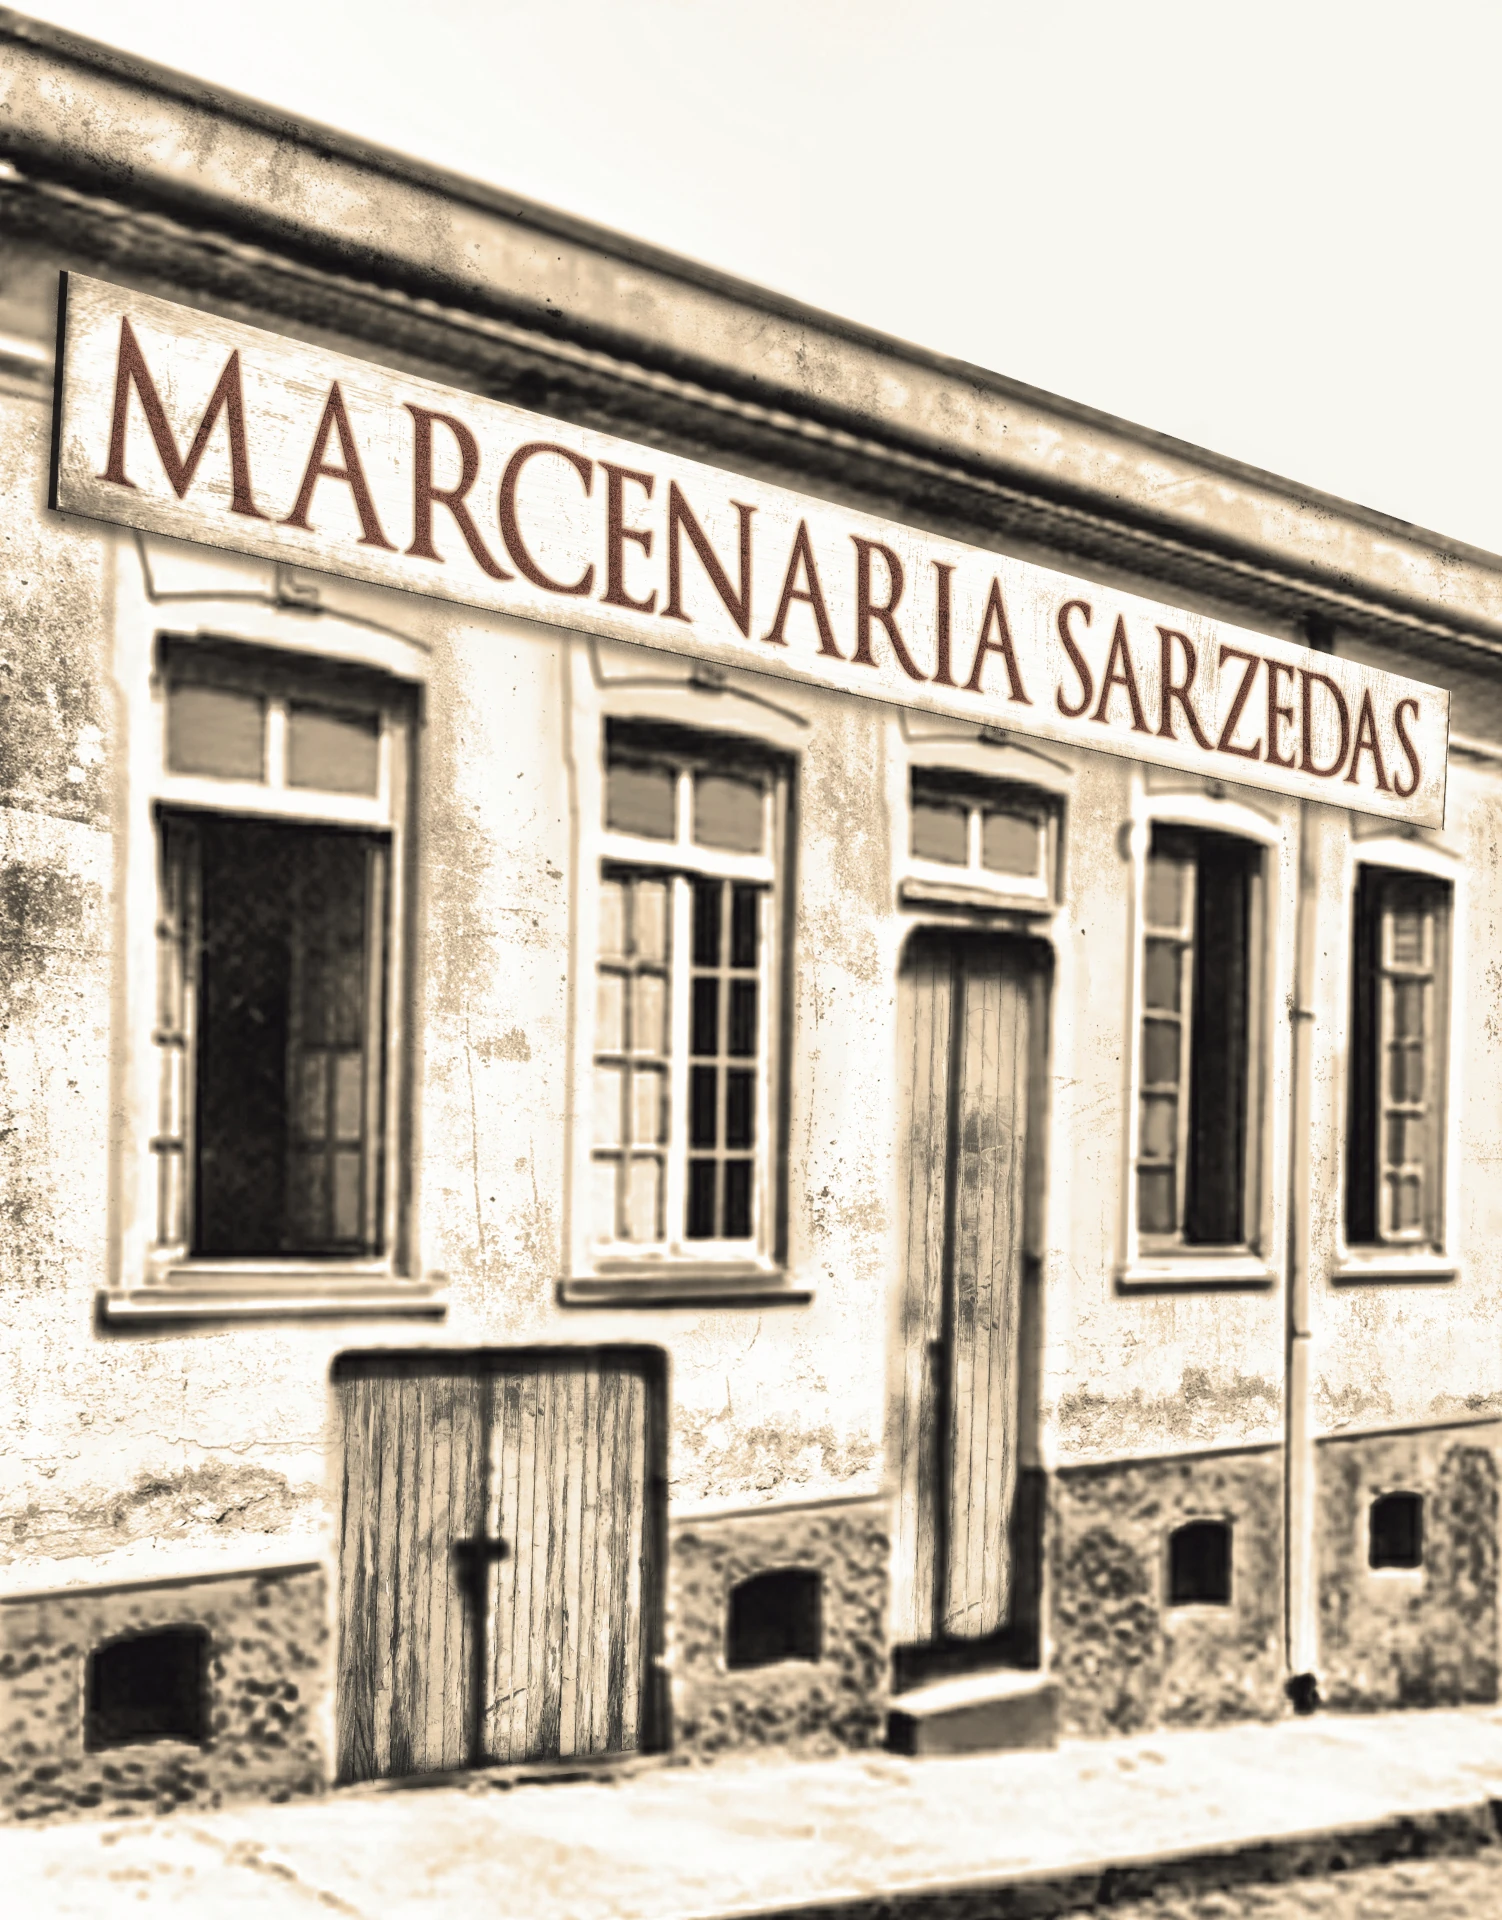 Fundação da empresa, imagem da primeira fachada da Marcenaria Sarzedas.